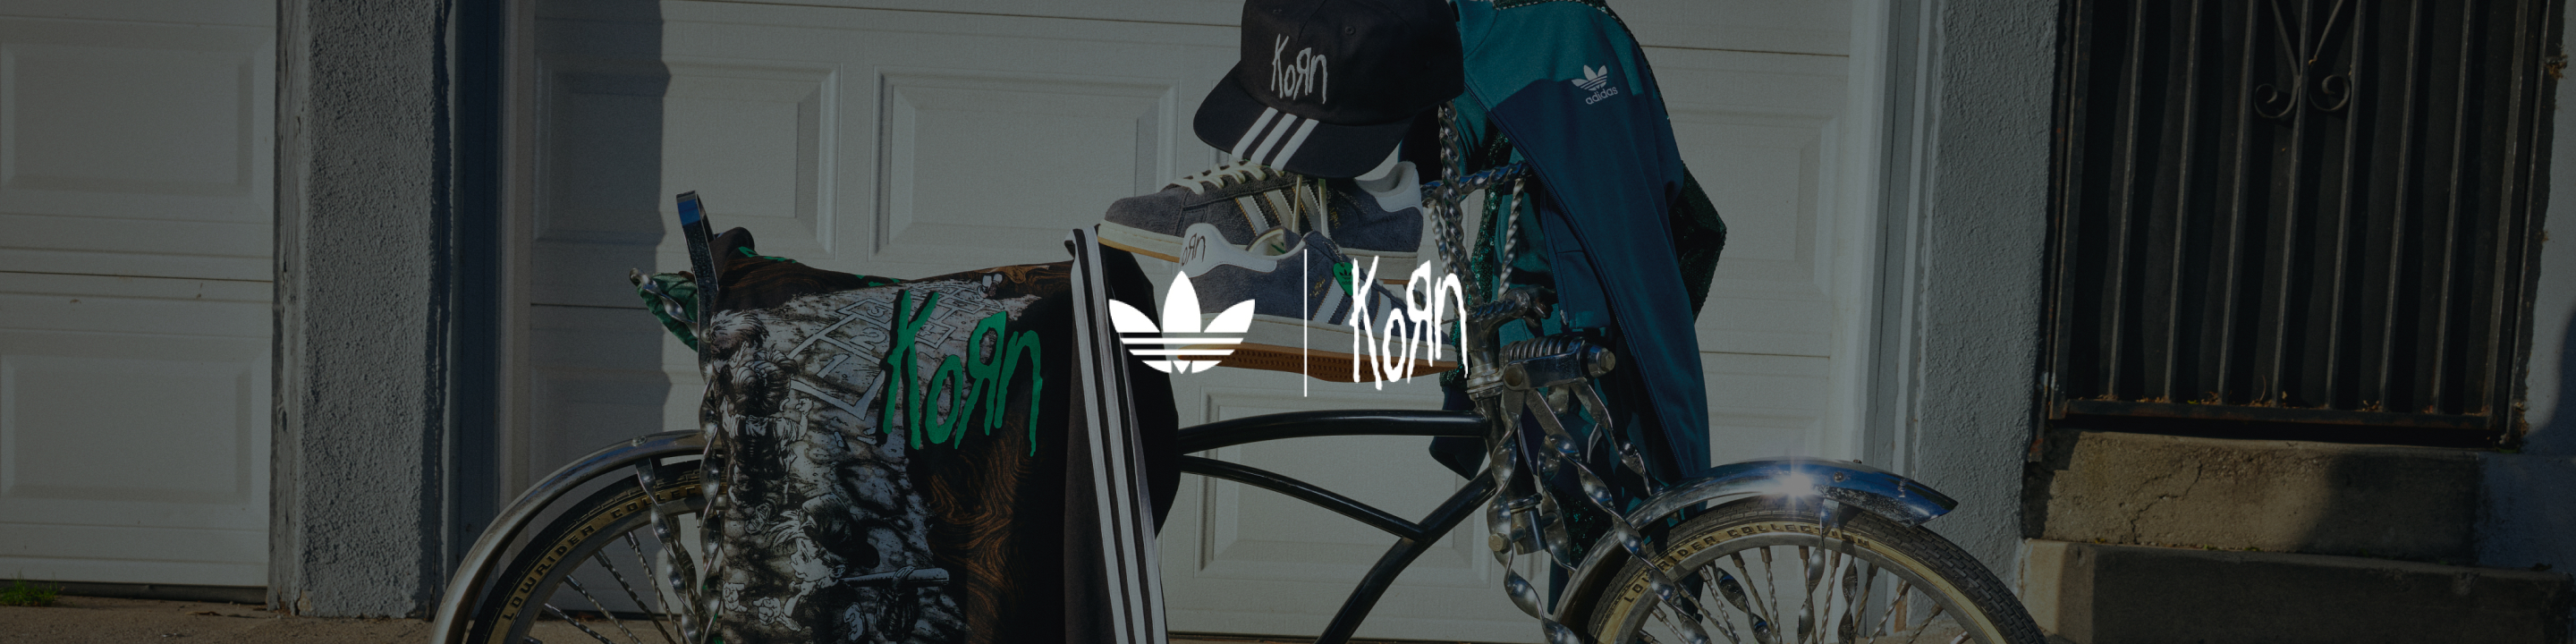 Korn | adidas US